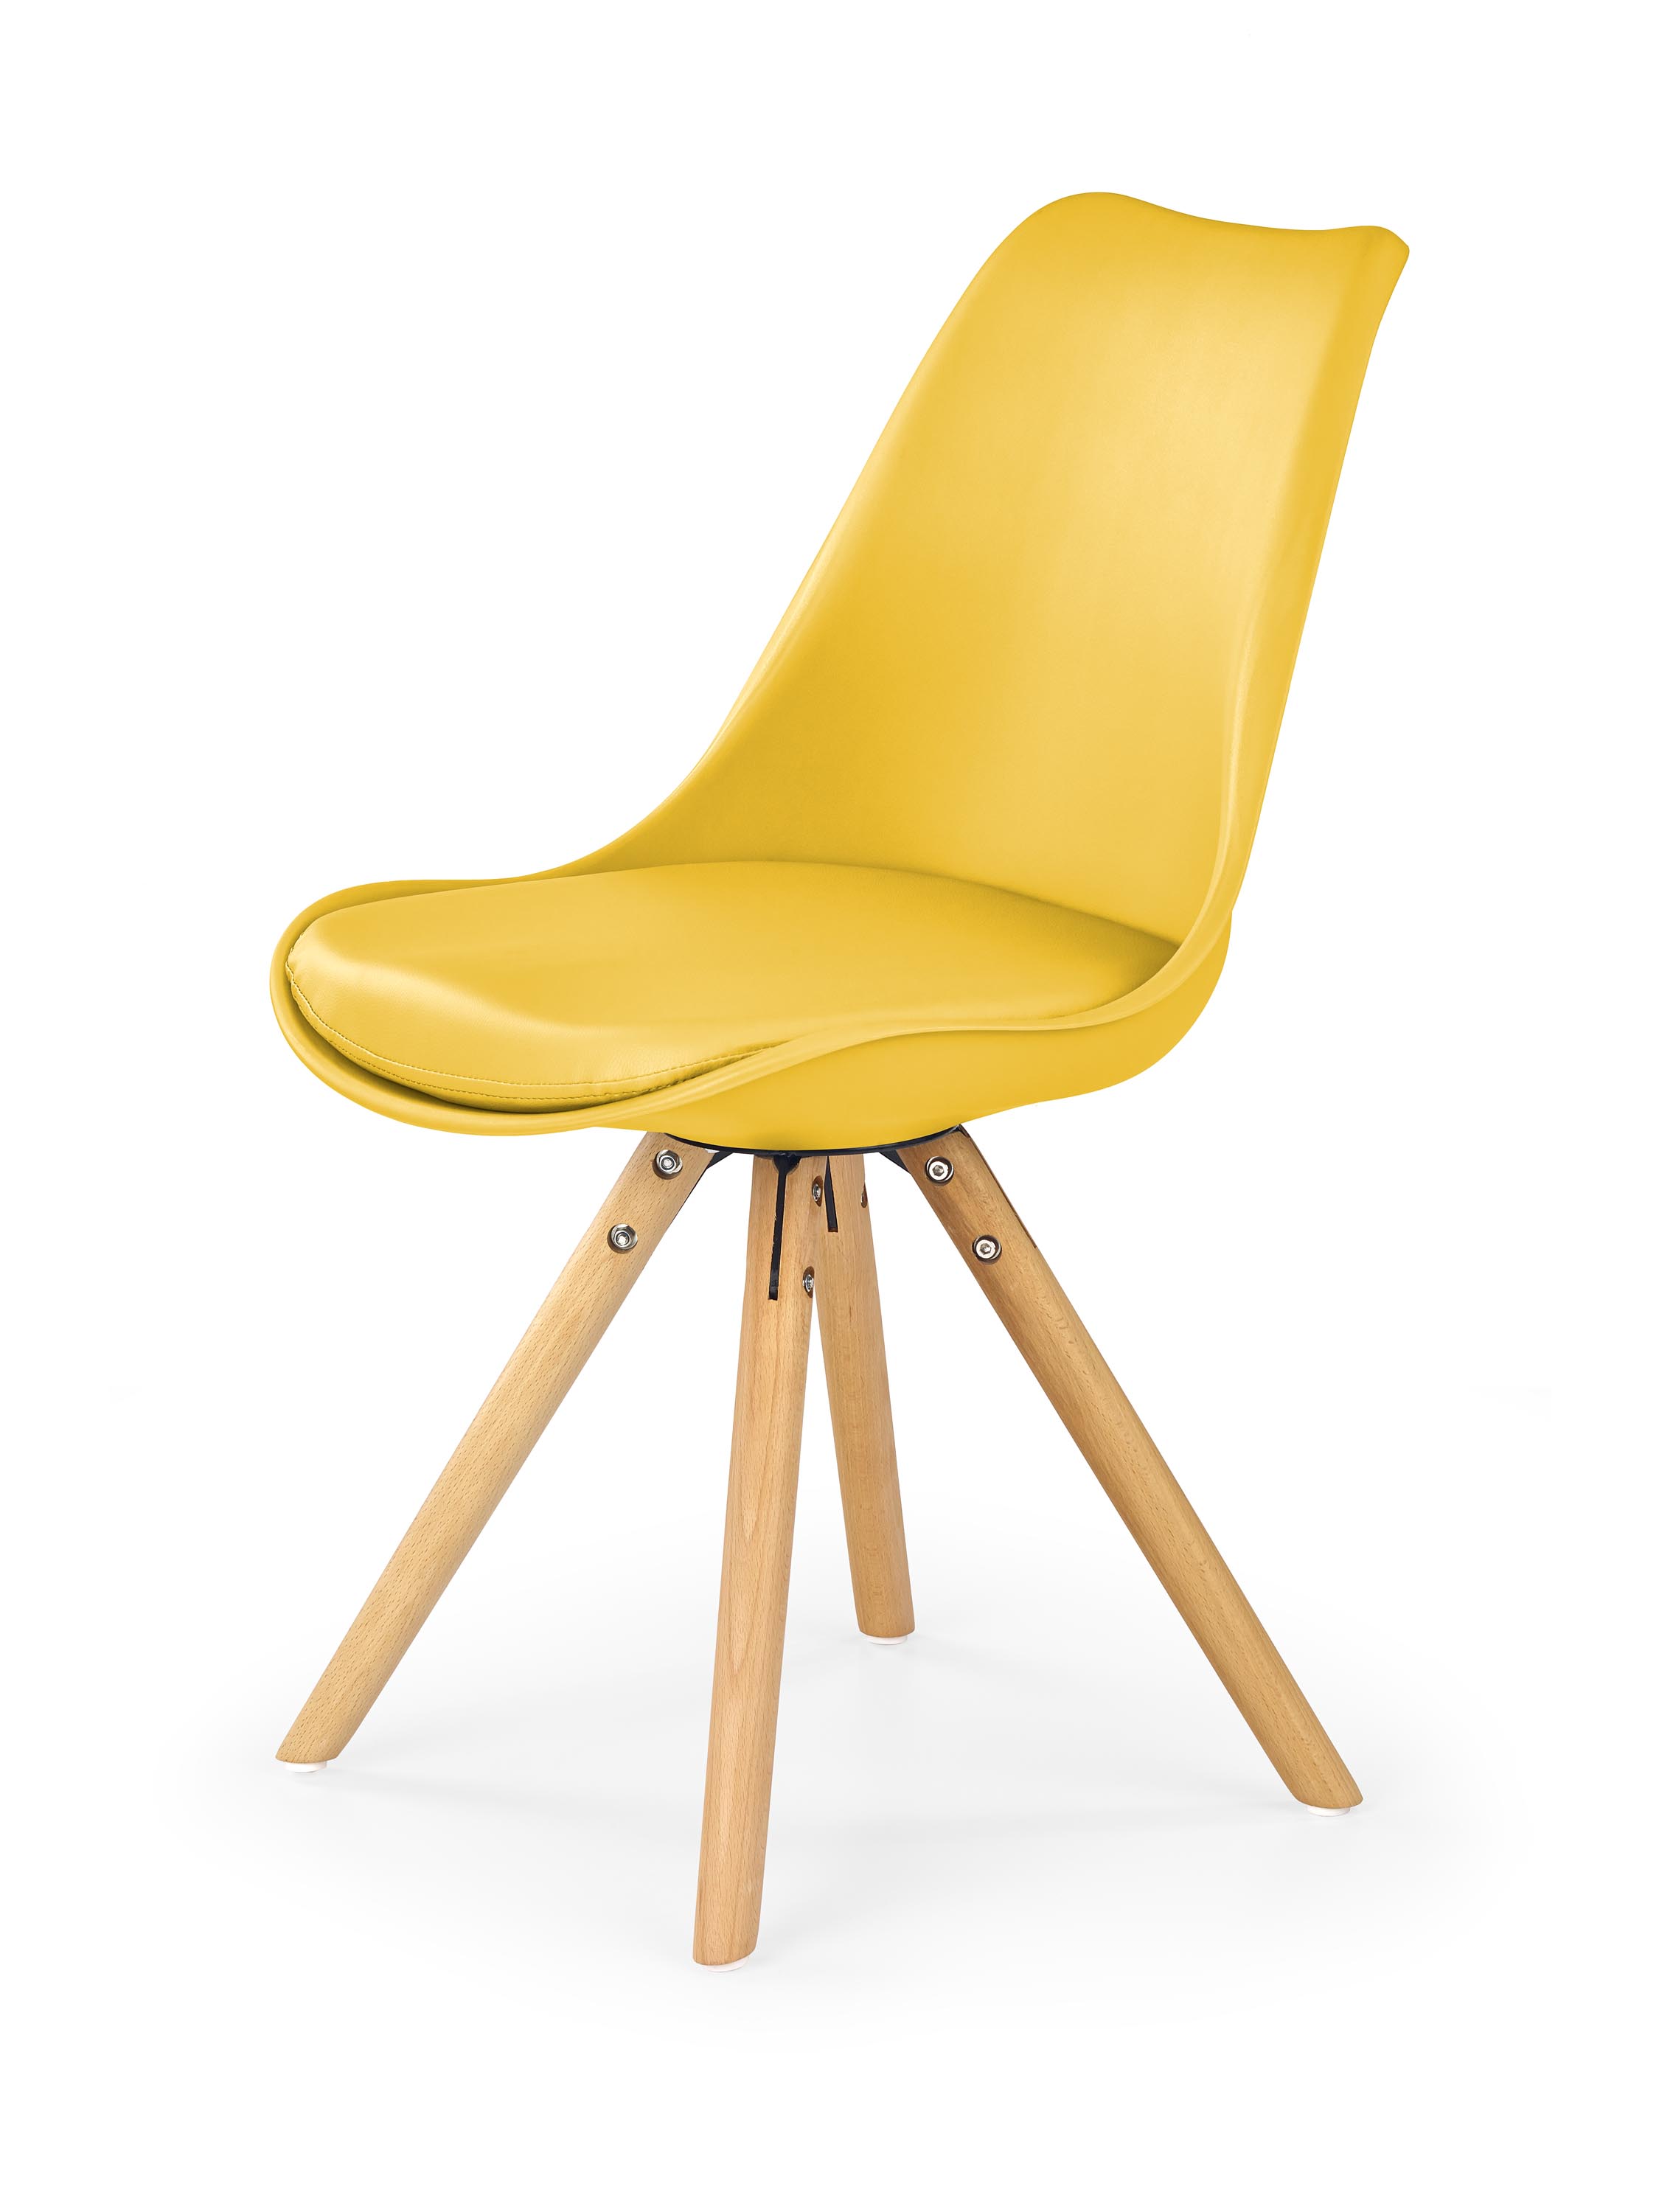 K201 krzesło żółty